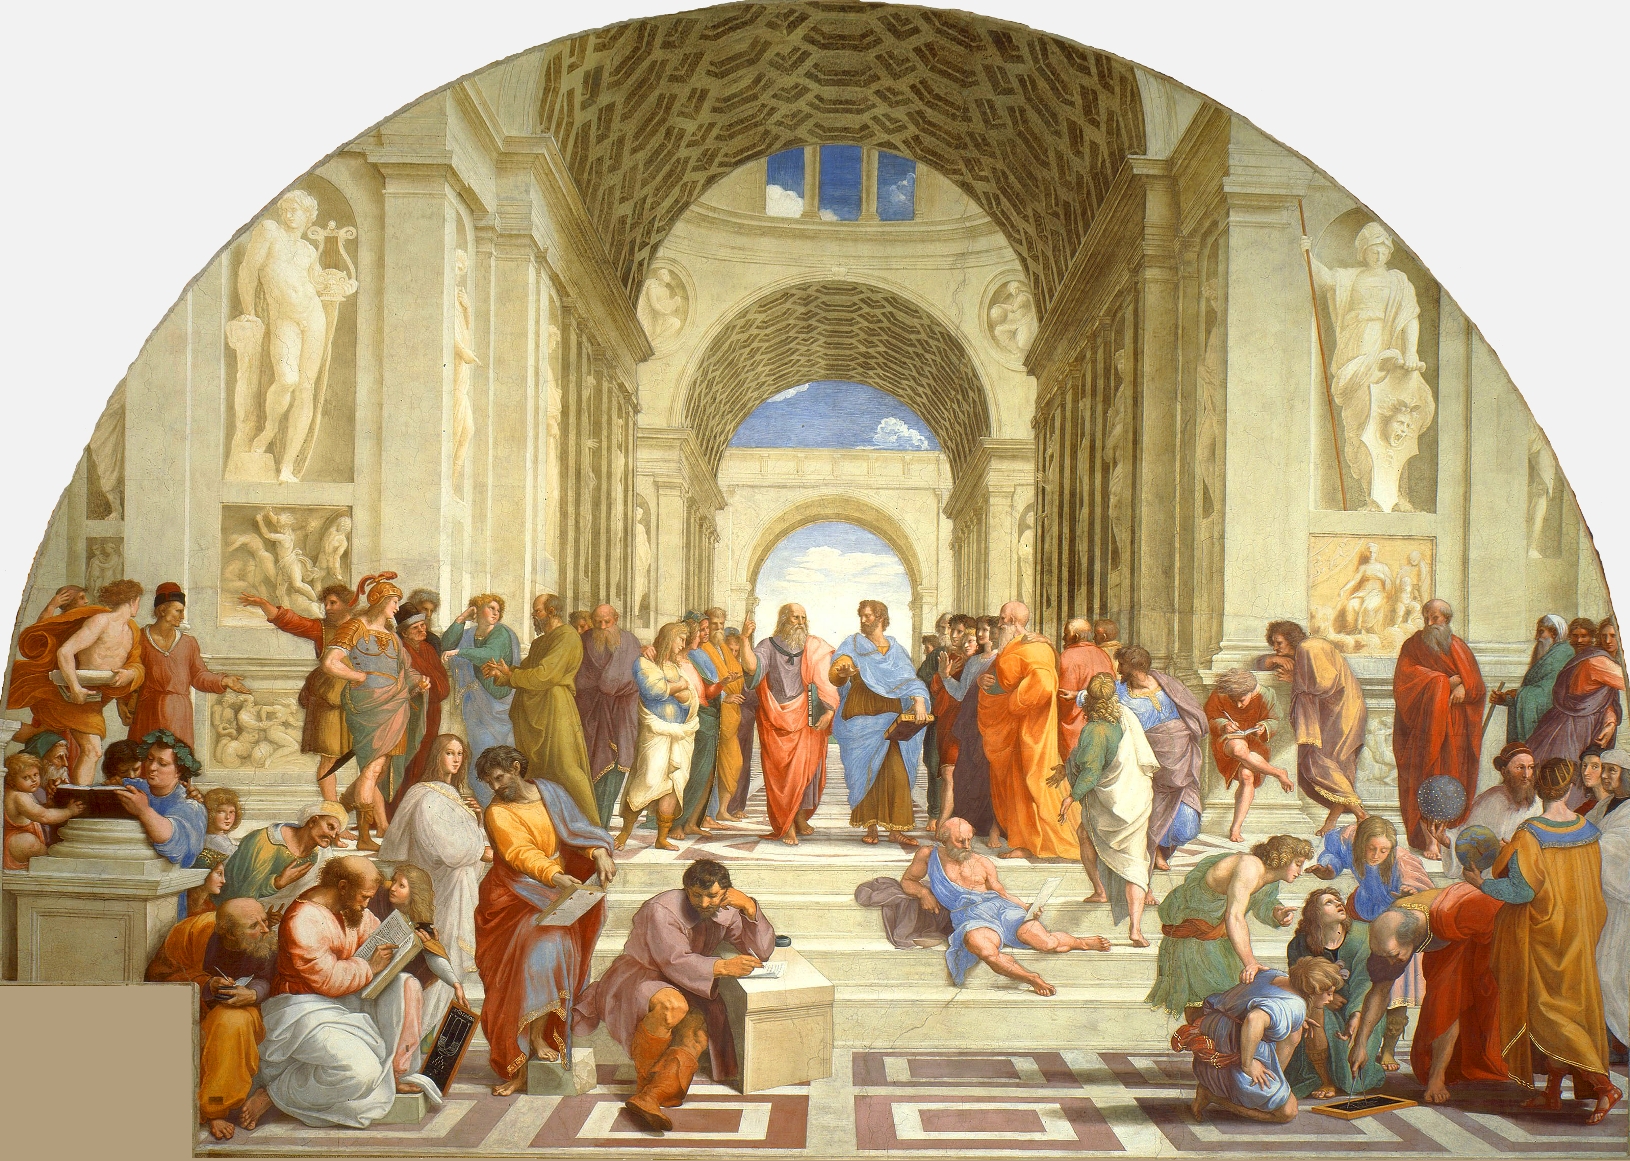 Une vue de la célèbre fresque de Raphaël montrant plusieurs des grands philosophes de l'Antiquité, parfois sous les traits de ses contemporains. Au centre, on voit ainsi Platon tenant son dialogue le Timée mais sous les traits de Léonard de Vinci. © DP